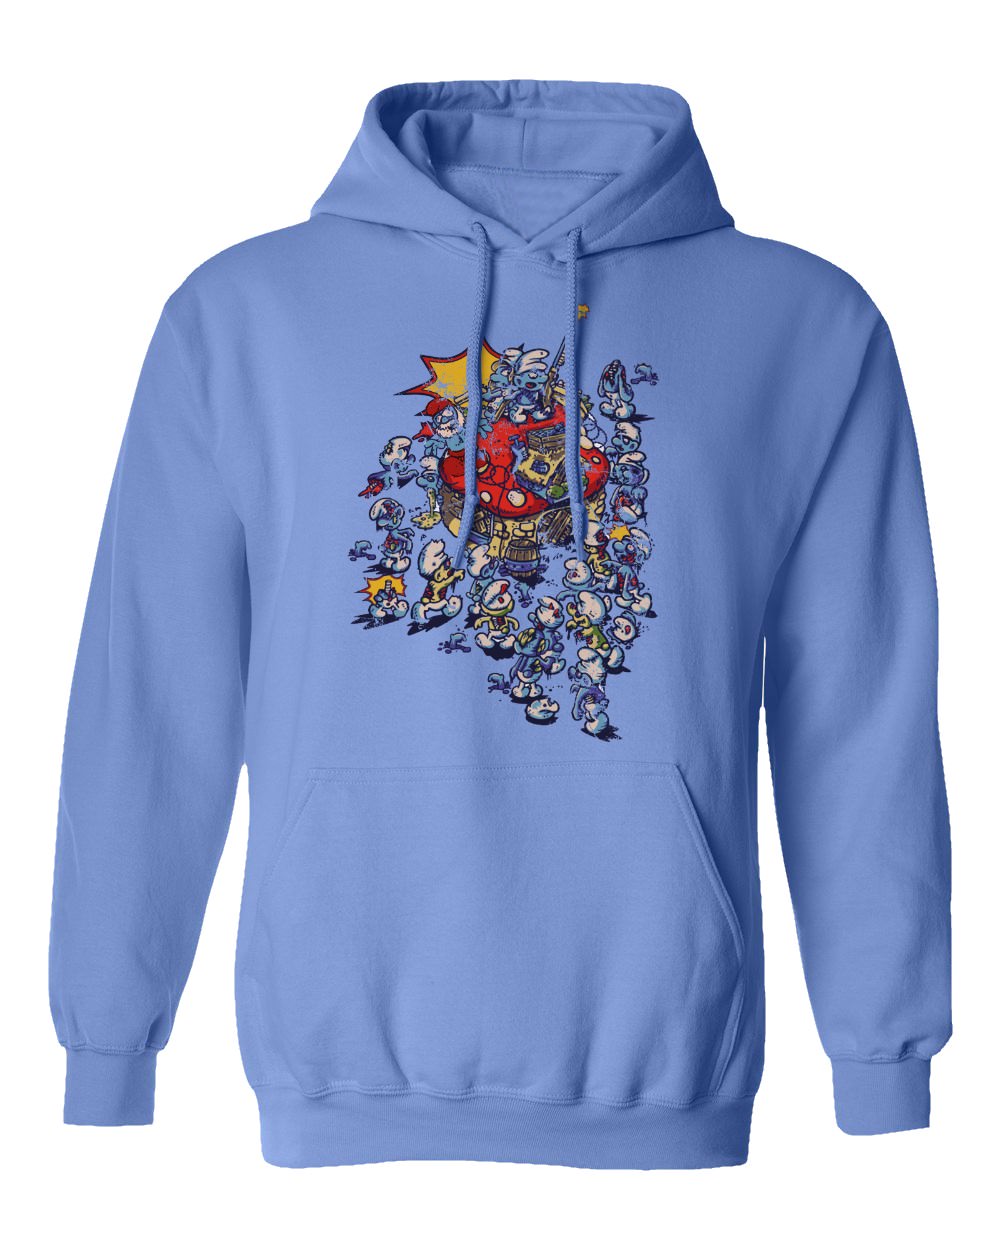 Smurf Zombie Shirt Gargamel Smurfette Men's Hooded Sweatshirt | eBay